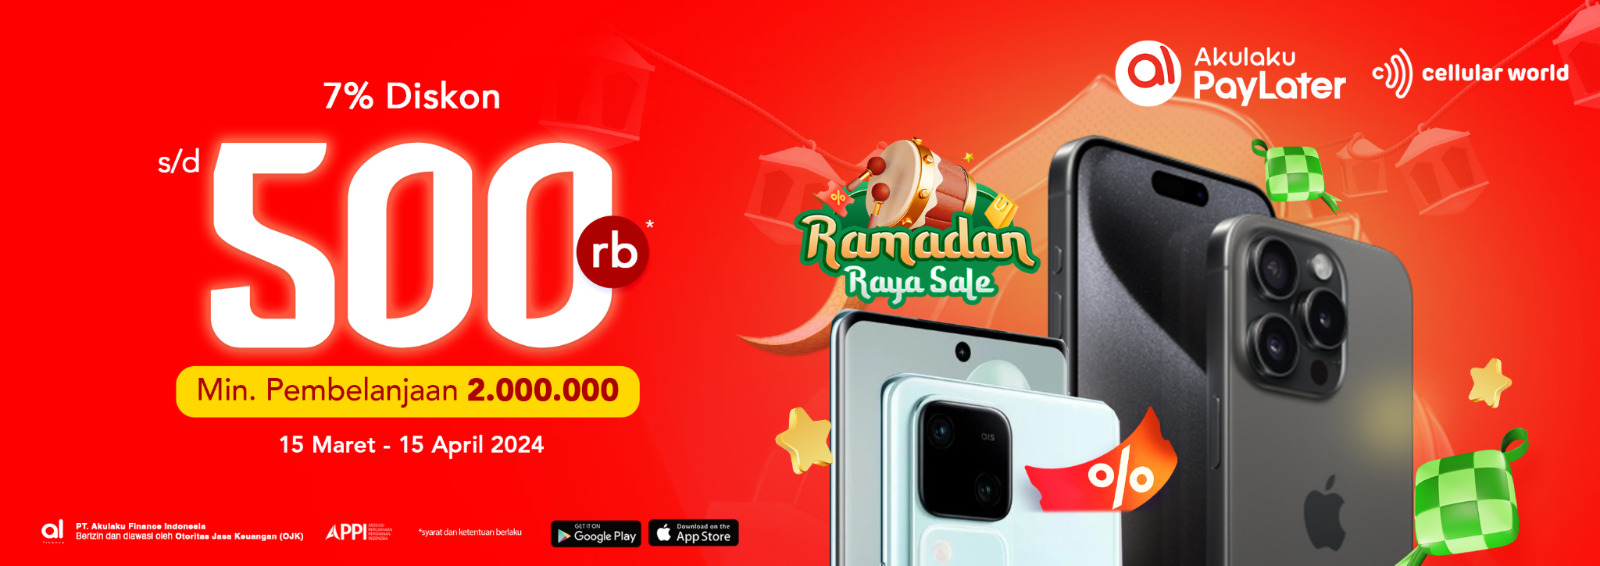 Manjakan Diri, Diskon Ramadhan di Cellular World, Diskon Hingga Rp500.000 dengan Pembayaran Akulaku PayLater